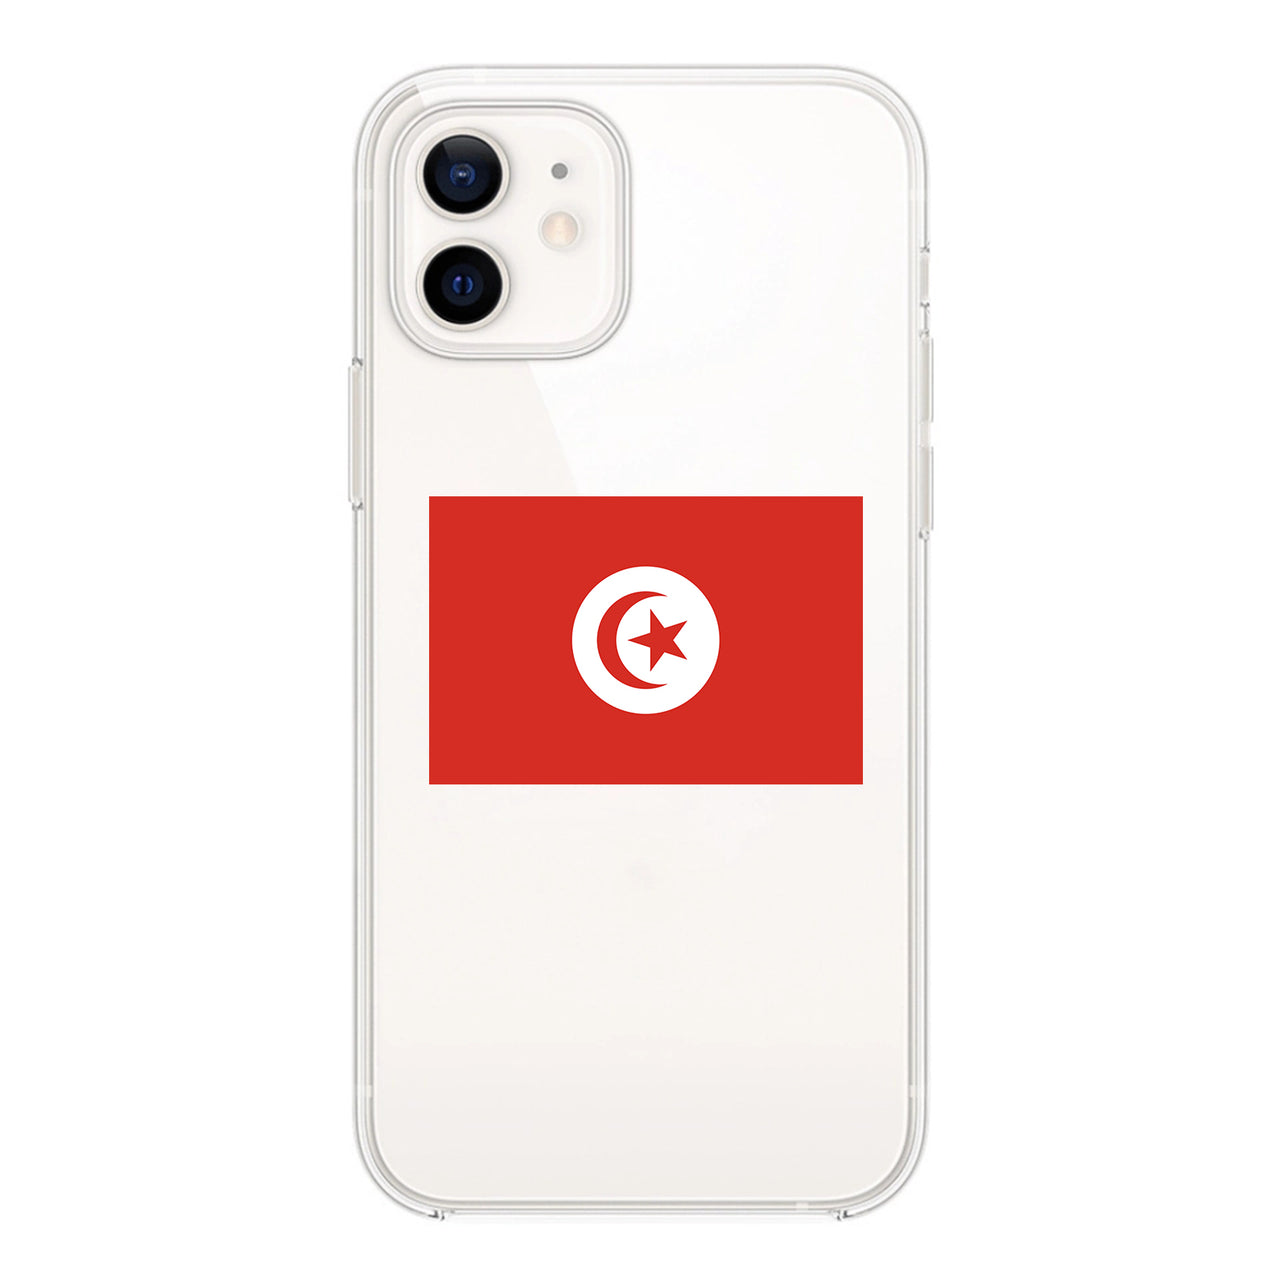 Tunisia Designed Transparent Silicone iPhone Cases